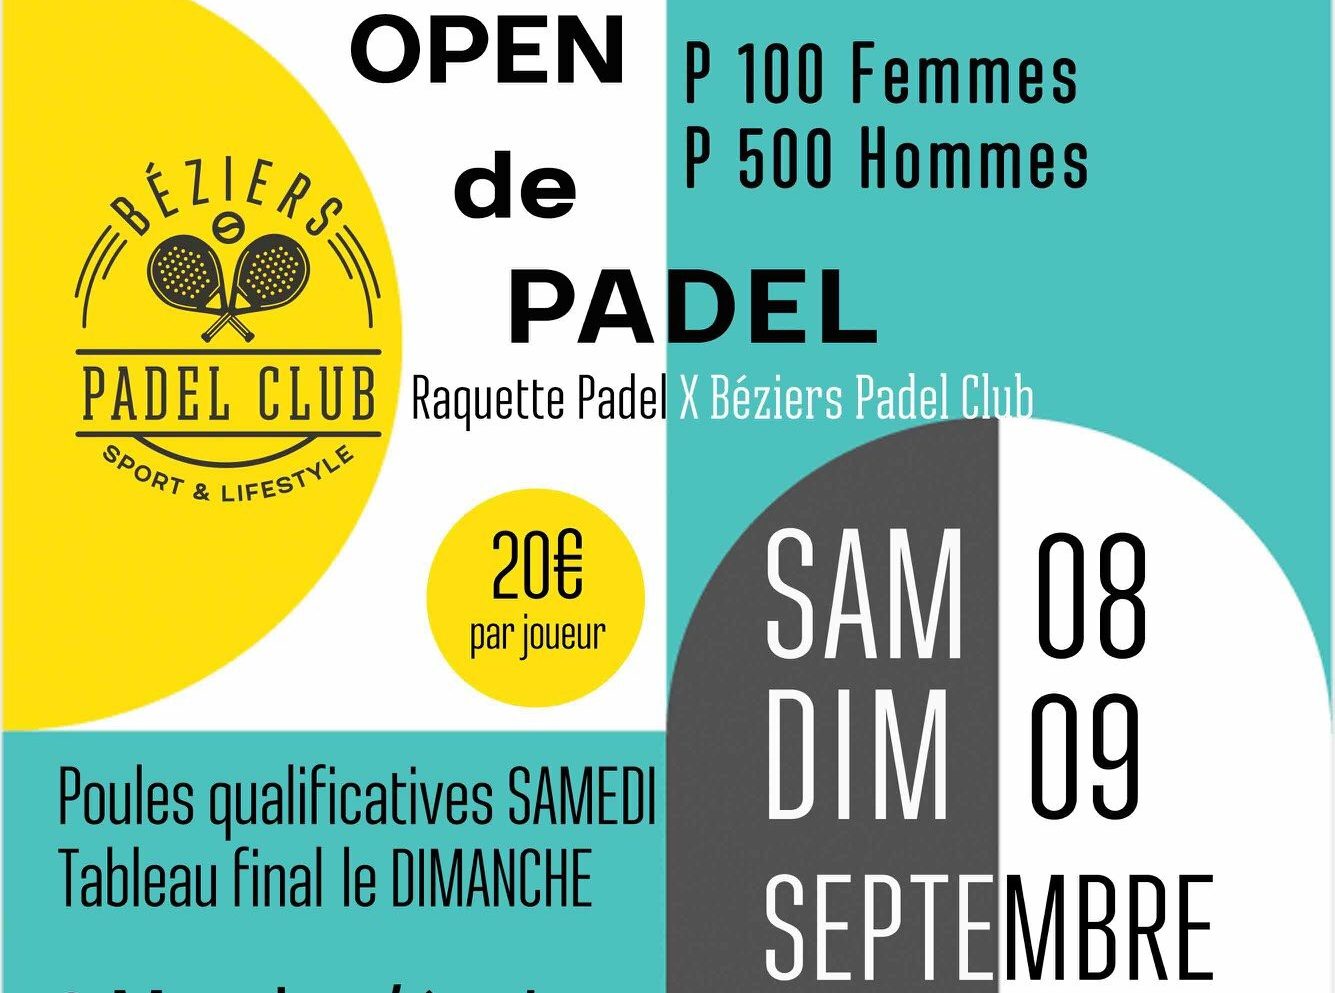 Béziers Padel Club tarjoaa ensimmäisen suuren turnauksensa padel